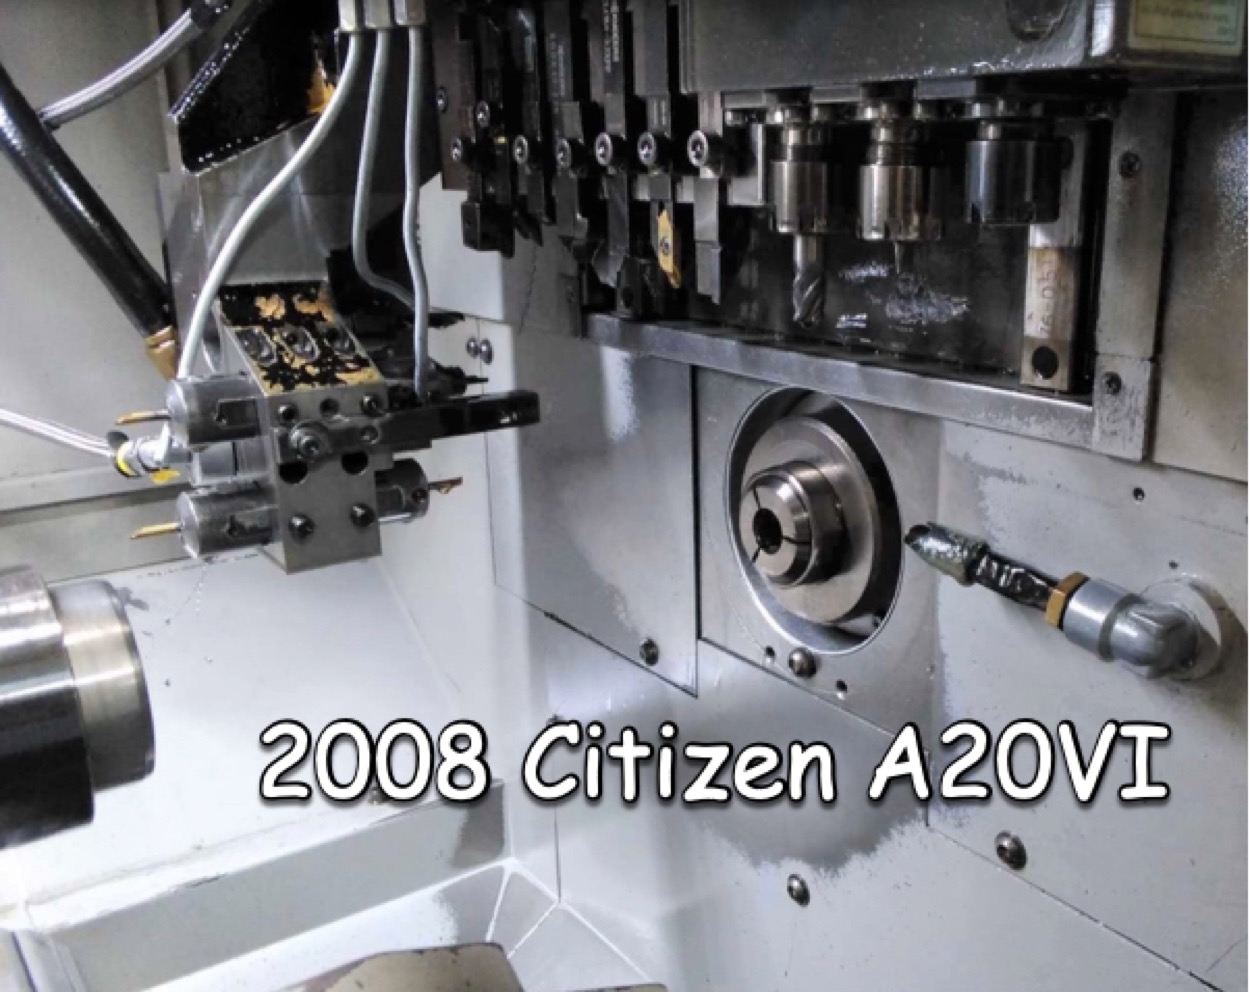  Citizen A-20 VII Lathe - CNC 20mm 2008